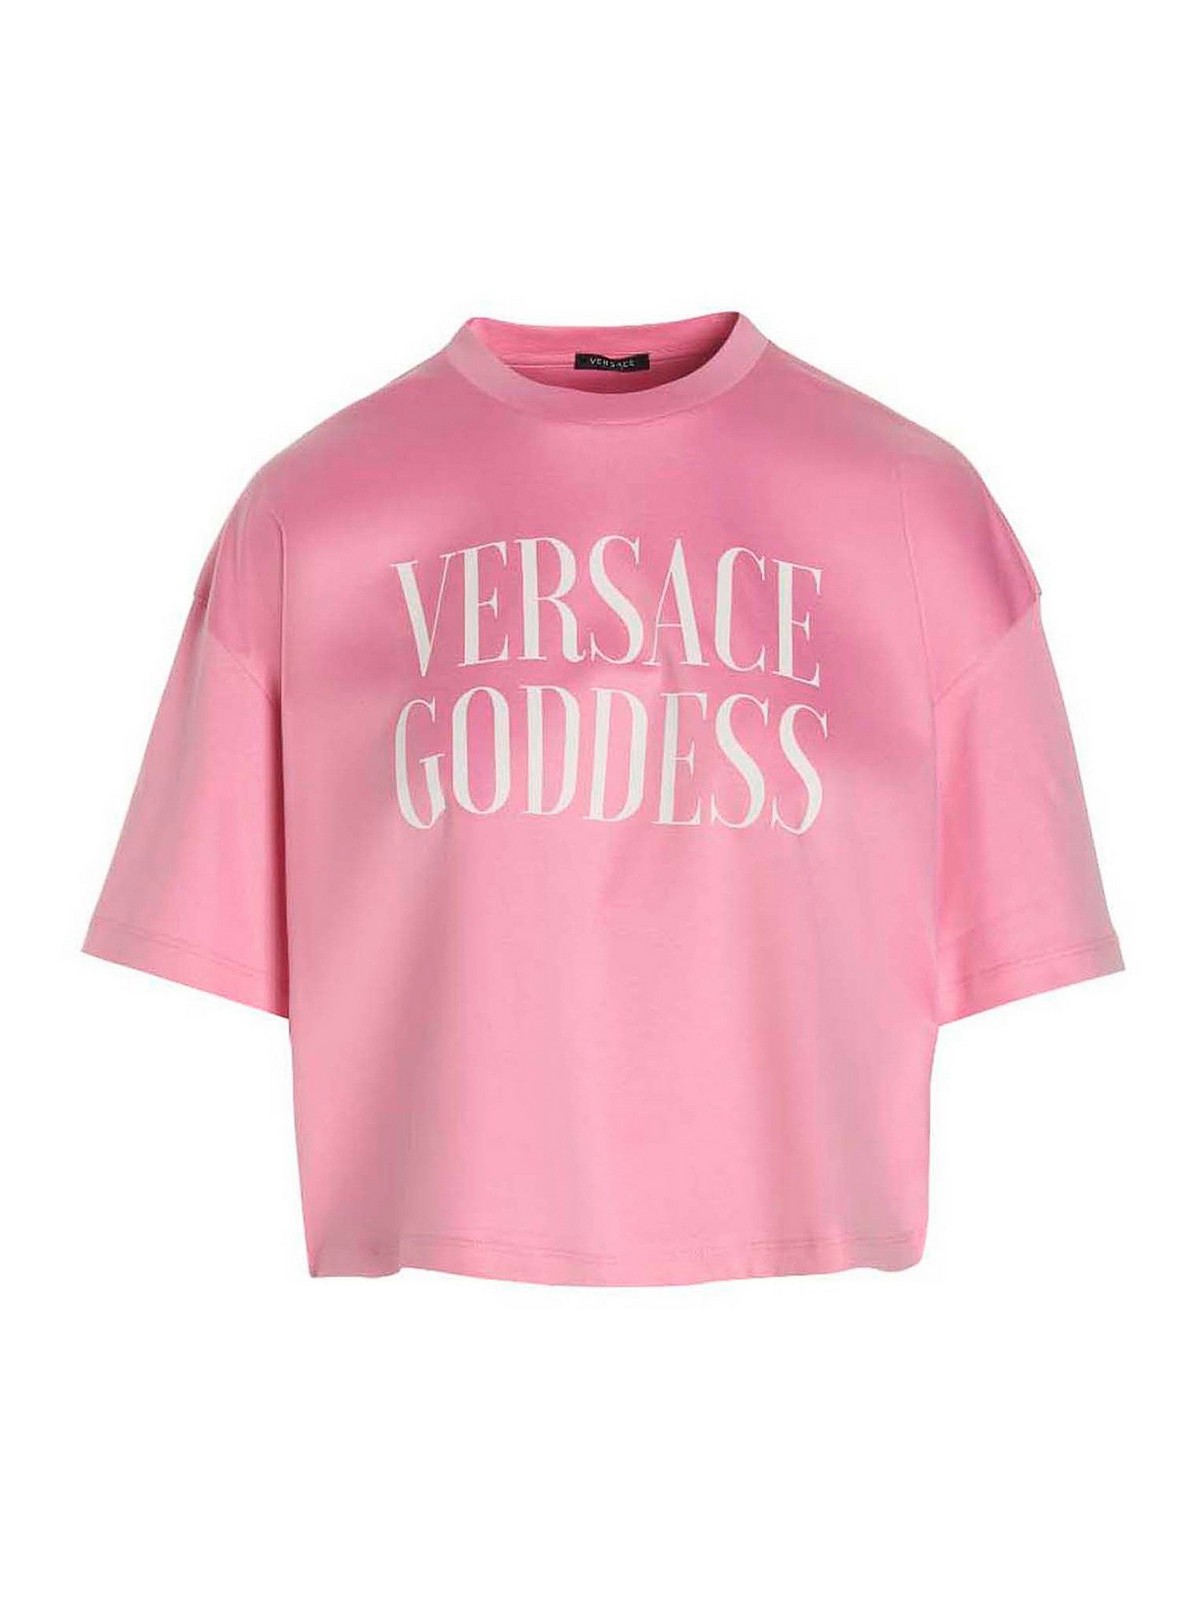 T-shirts Versace - Versace goddess T-shirt - 10090831A065291PK40